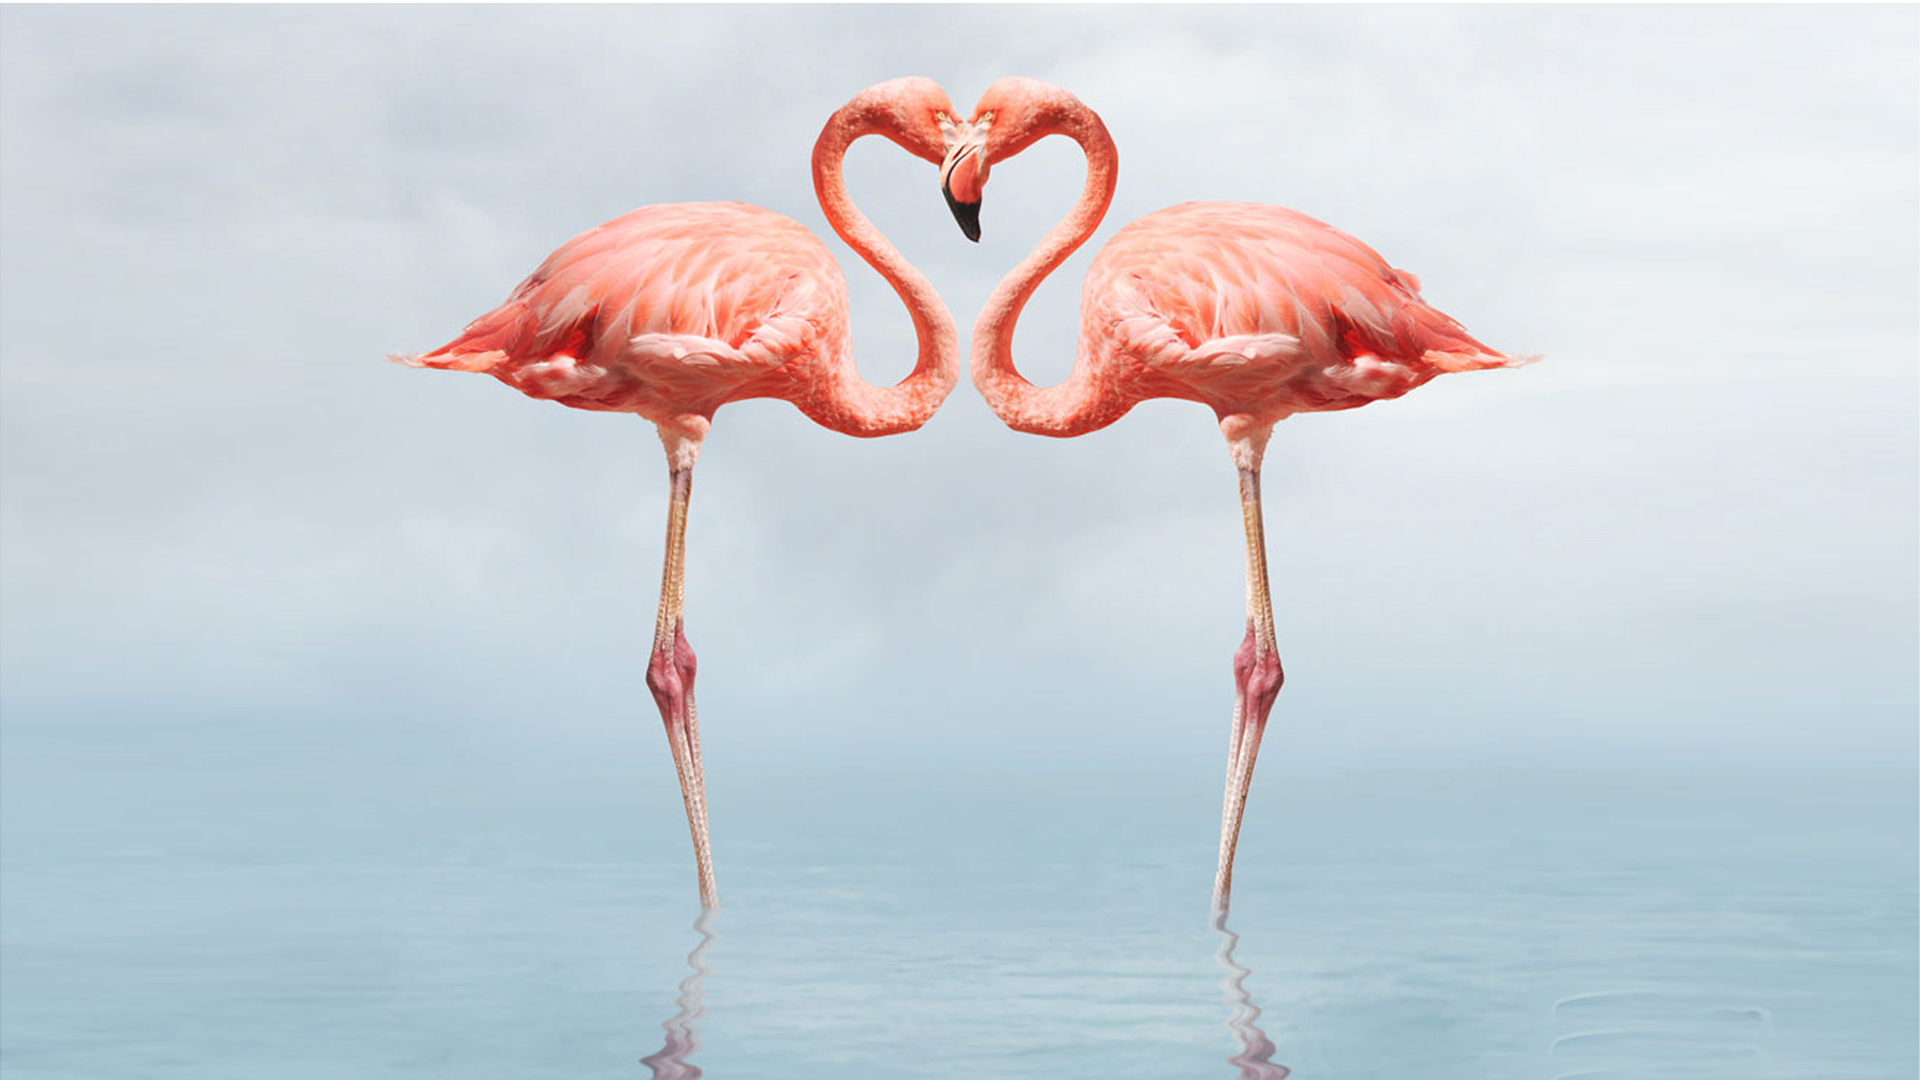 Flamingo Full Hd Wallpapers 1080p